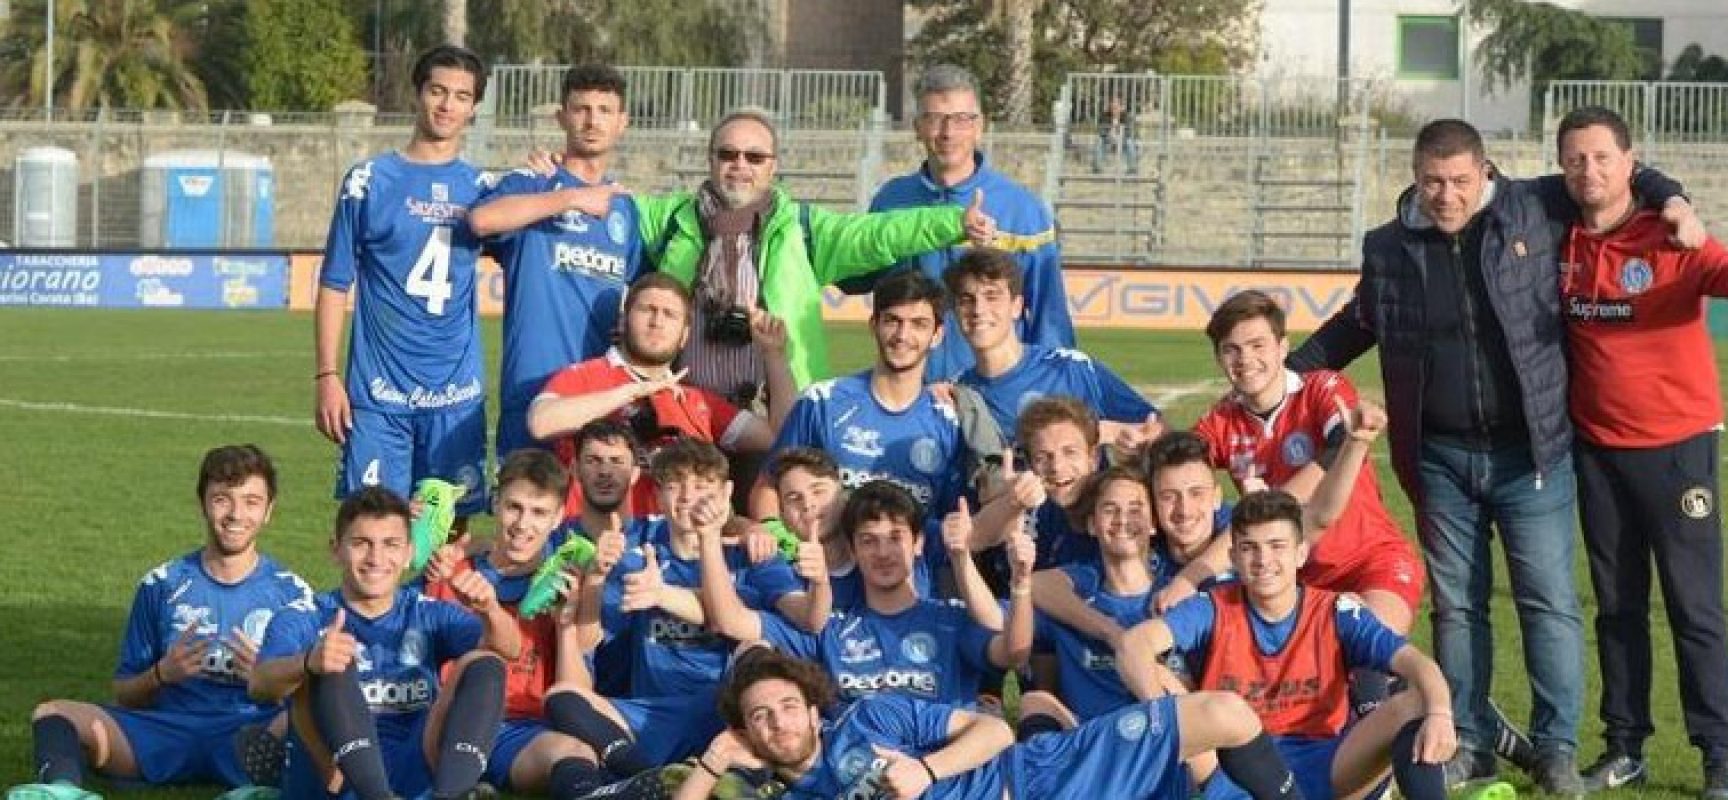 L’Unione Calcio Bisceglie concende il bis vincendo il campionato Juniores